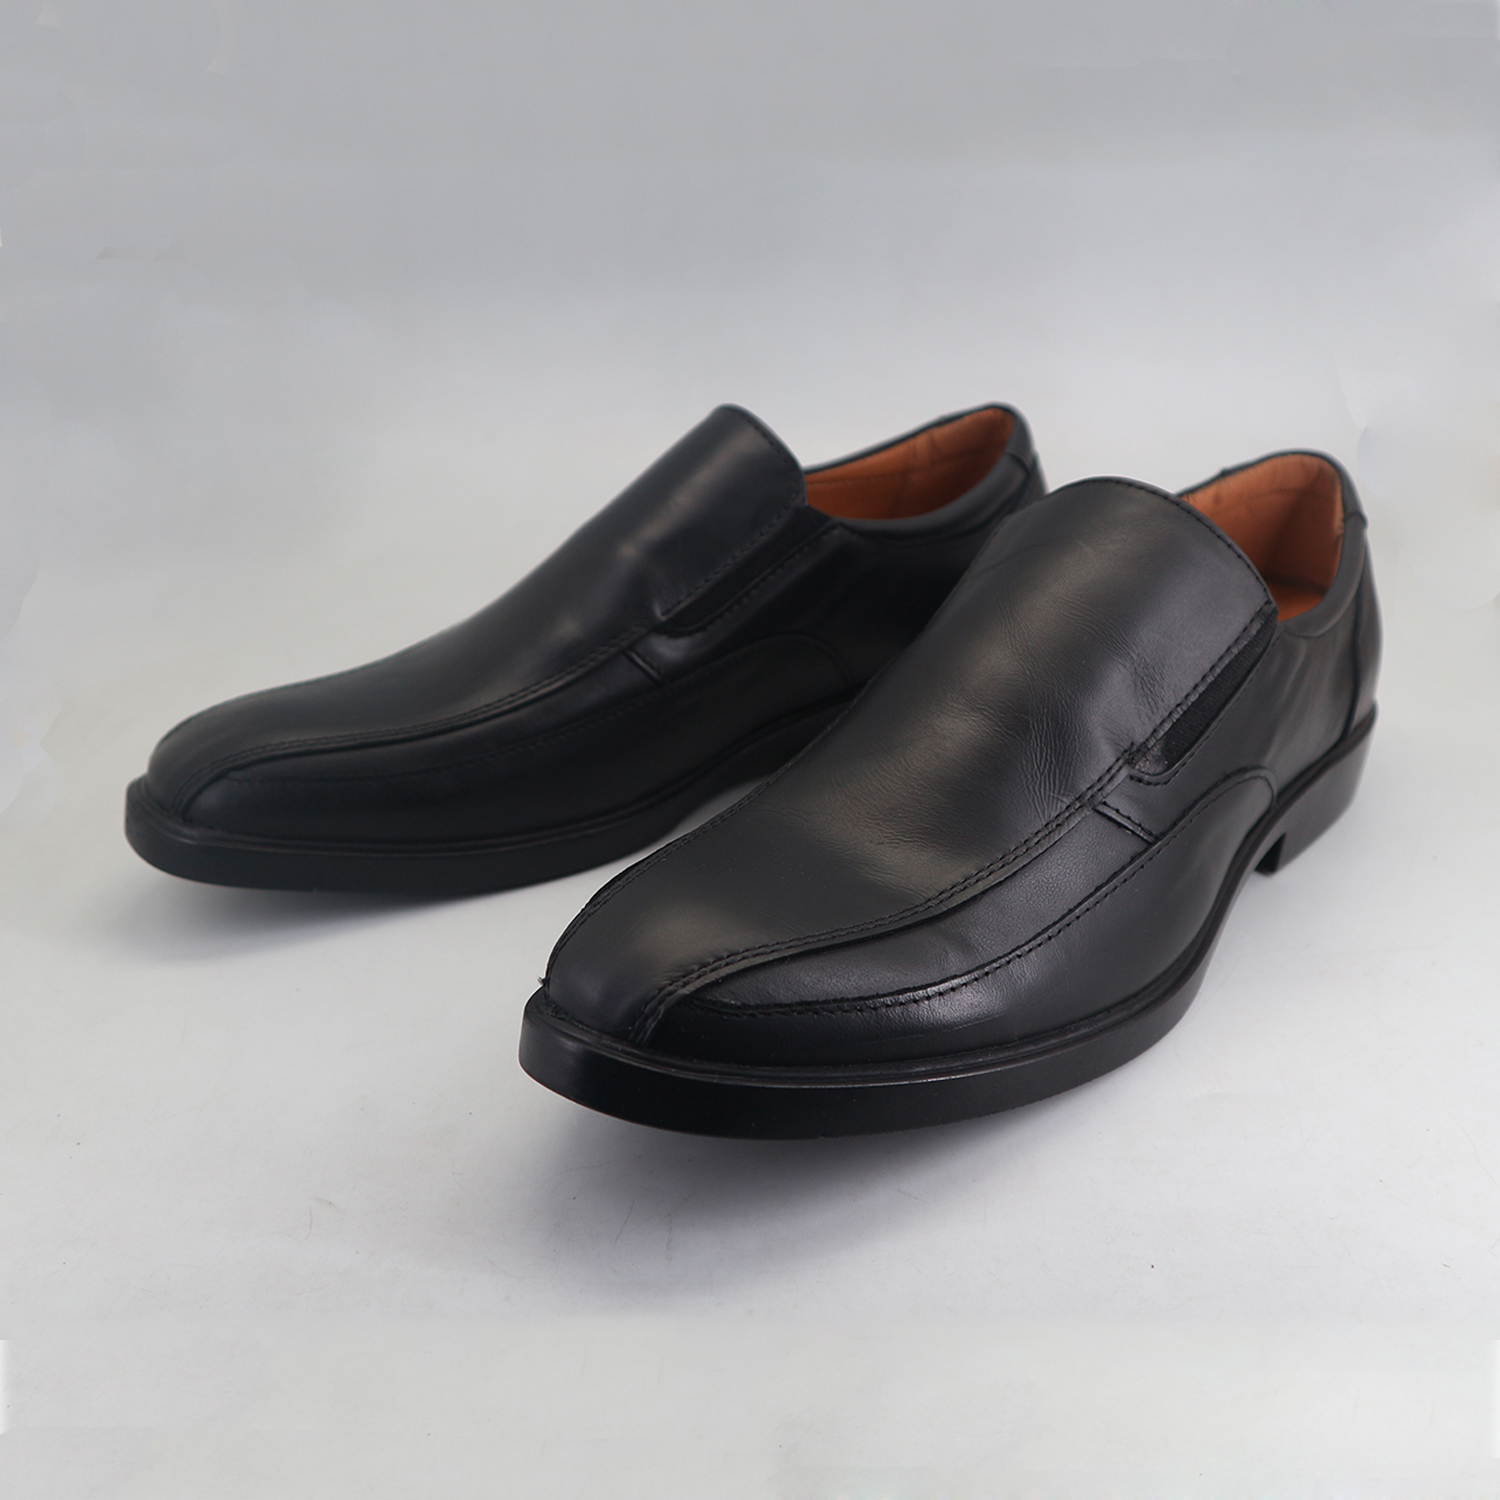 Rusty Lopez Men's Formal Shoes - RMG23005F22 - Rusty Lopez